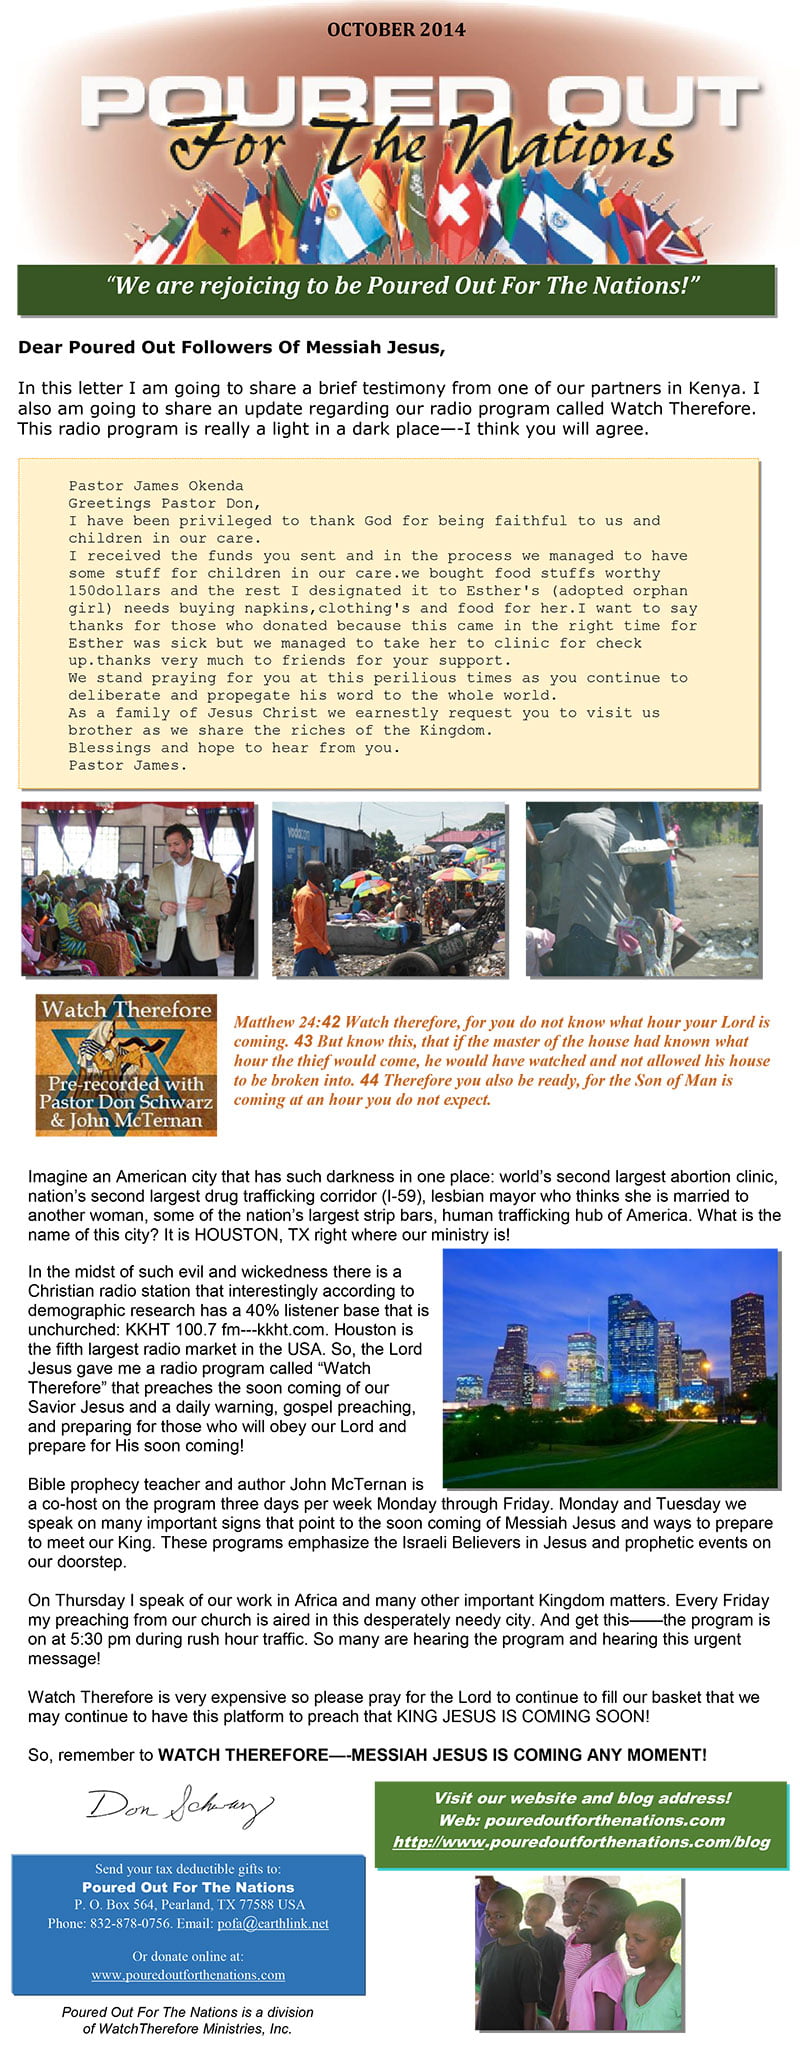 POFN-October-2014-newsletter